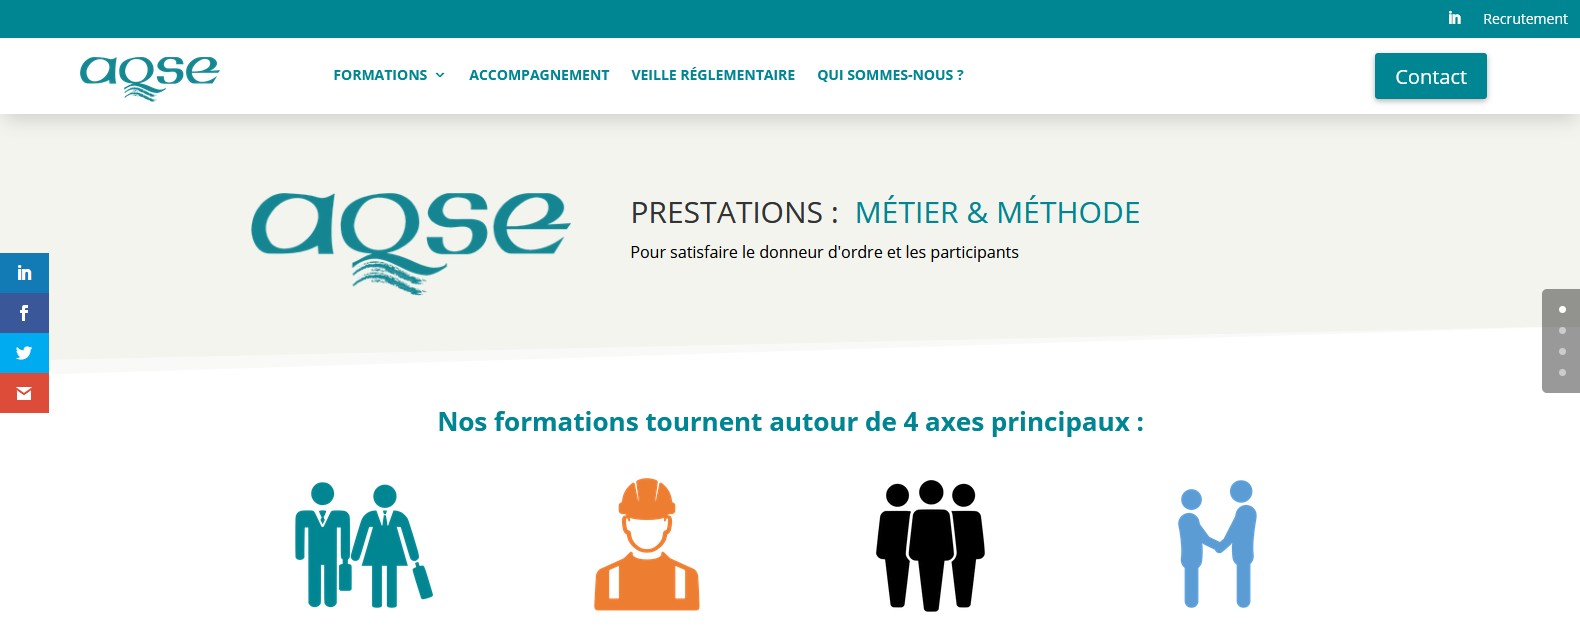 AQSE-France.fr la formation du CSE métier et méthodes